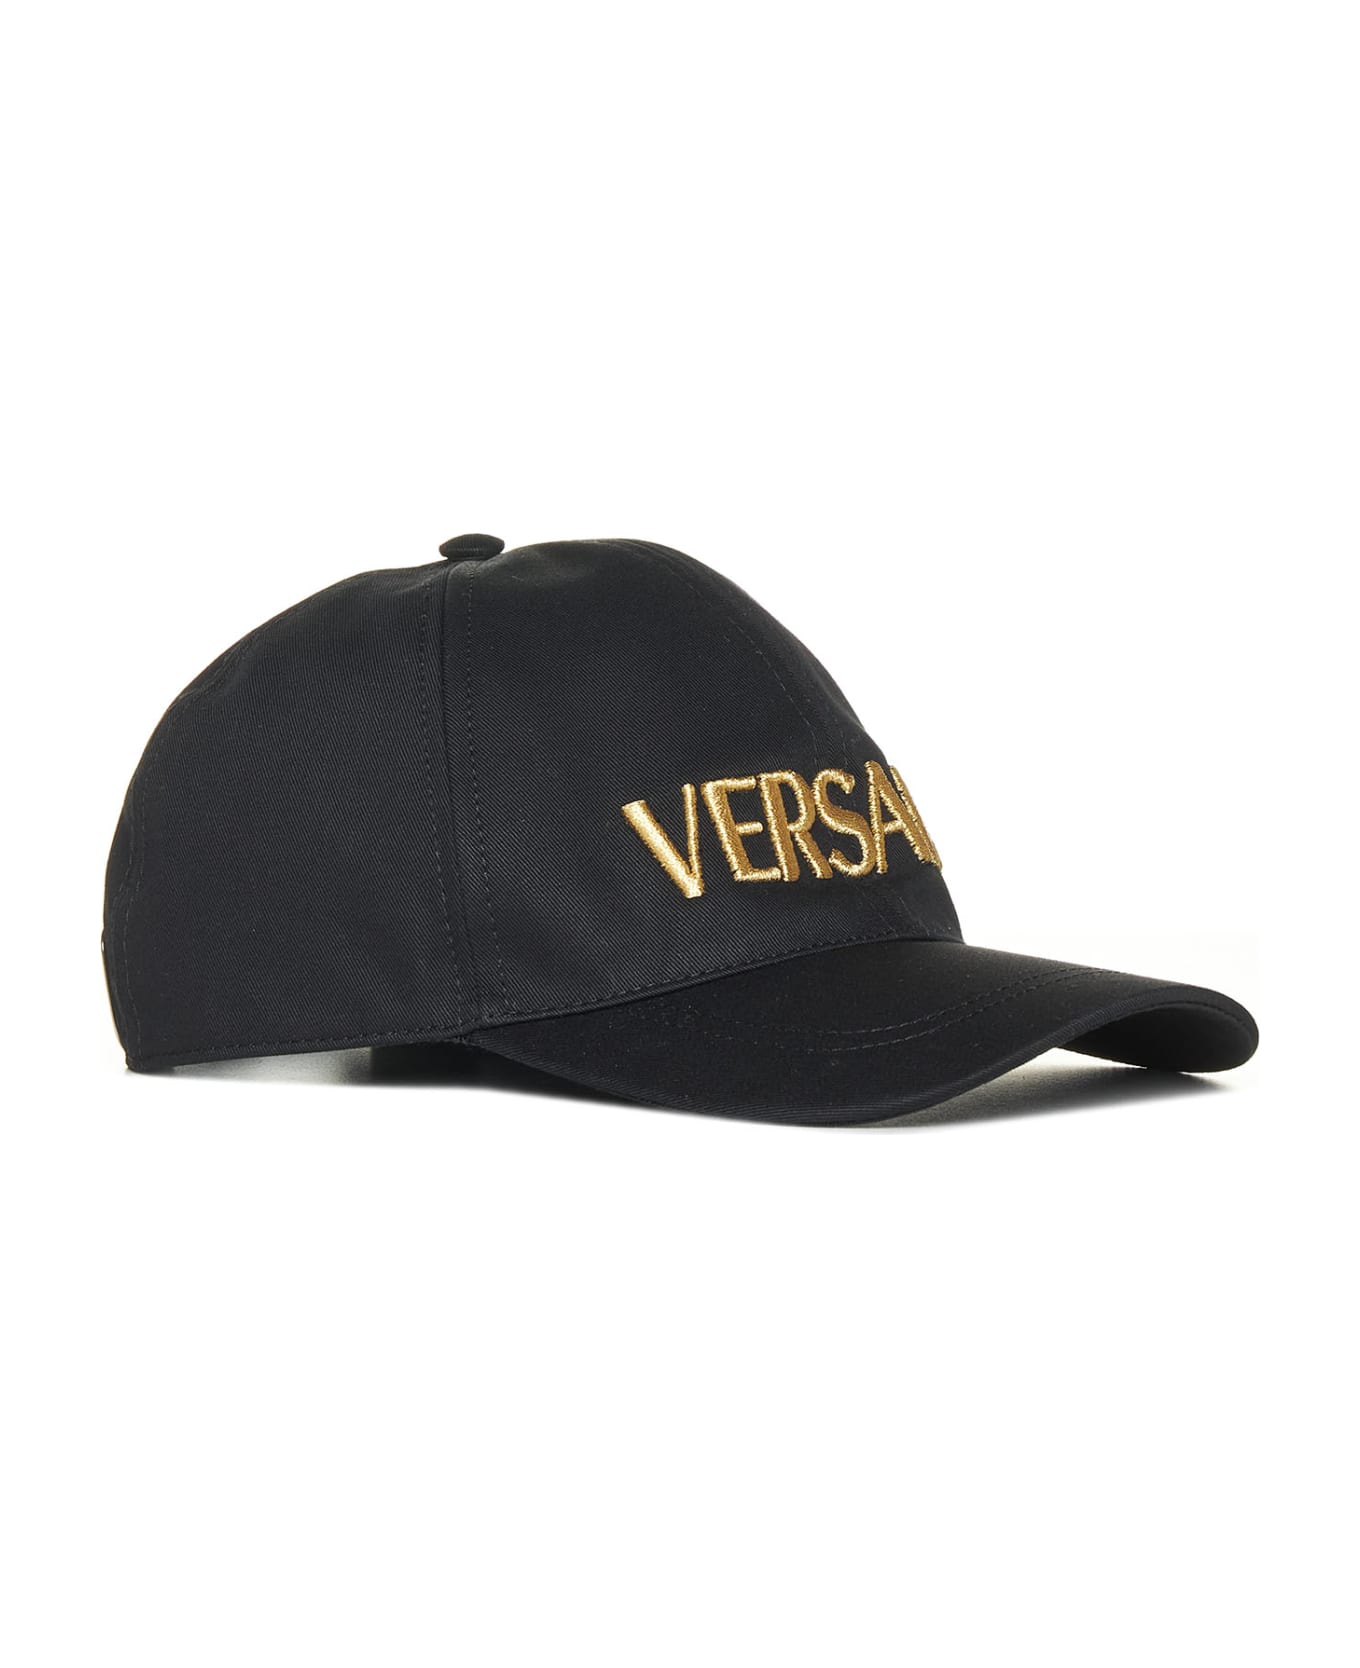 Versace Hat - Black